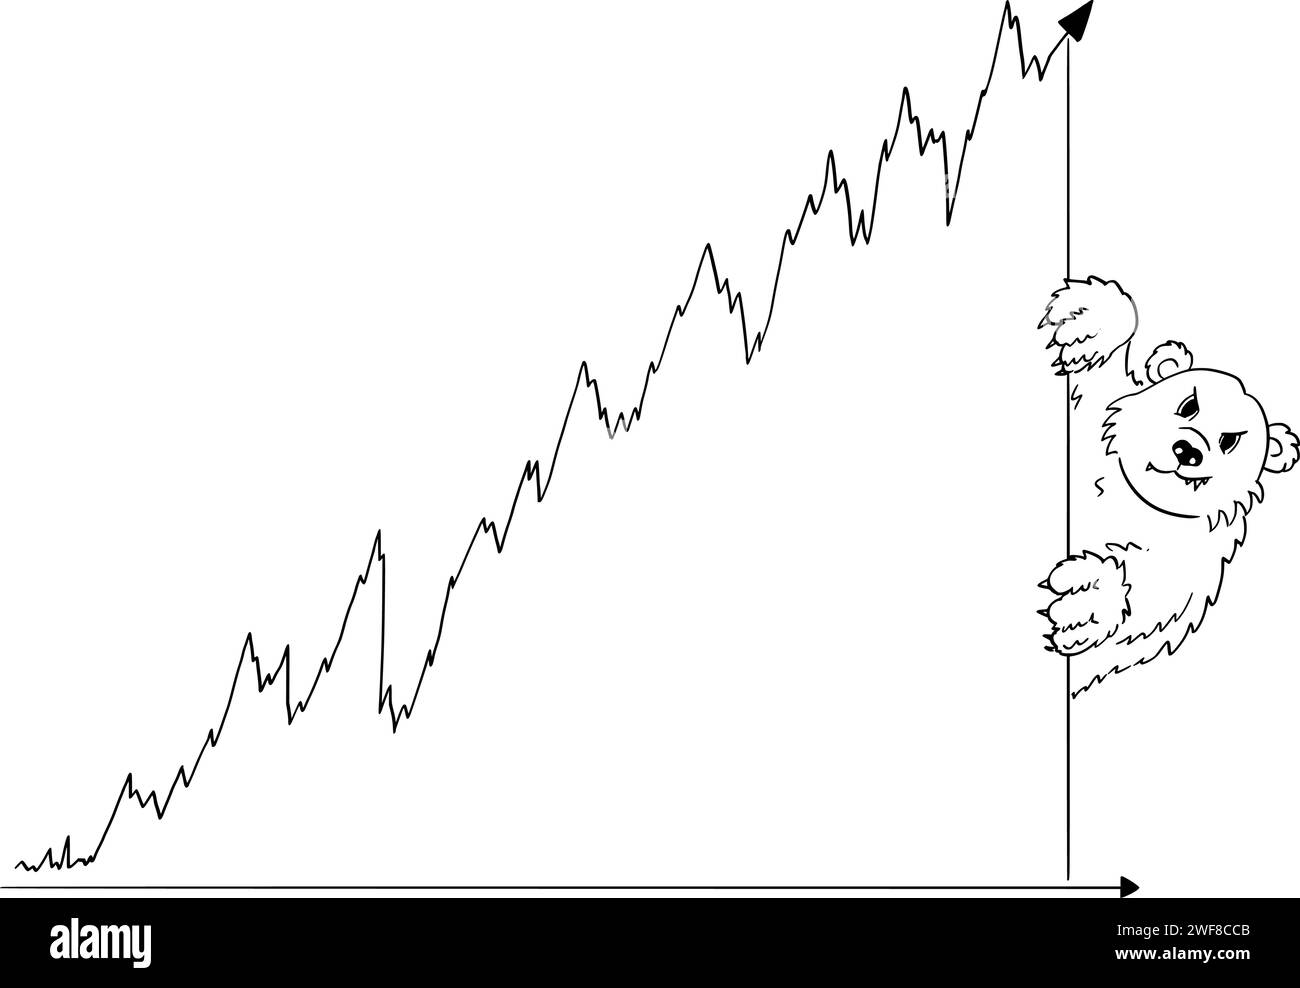 Felice uomo d'affari e crescente Graph of Bull Market, Vector Cartoon Illustration Illustrazione Vettoriale